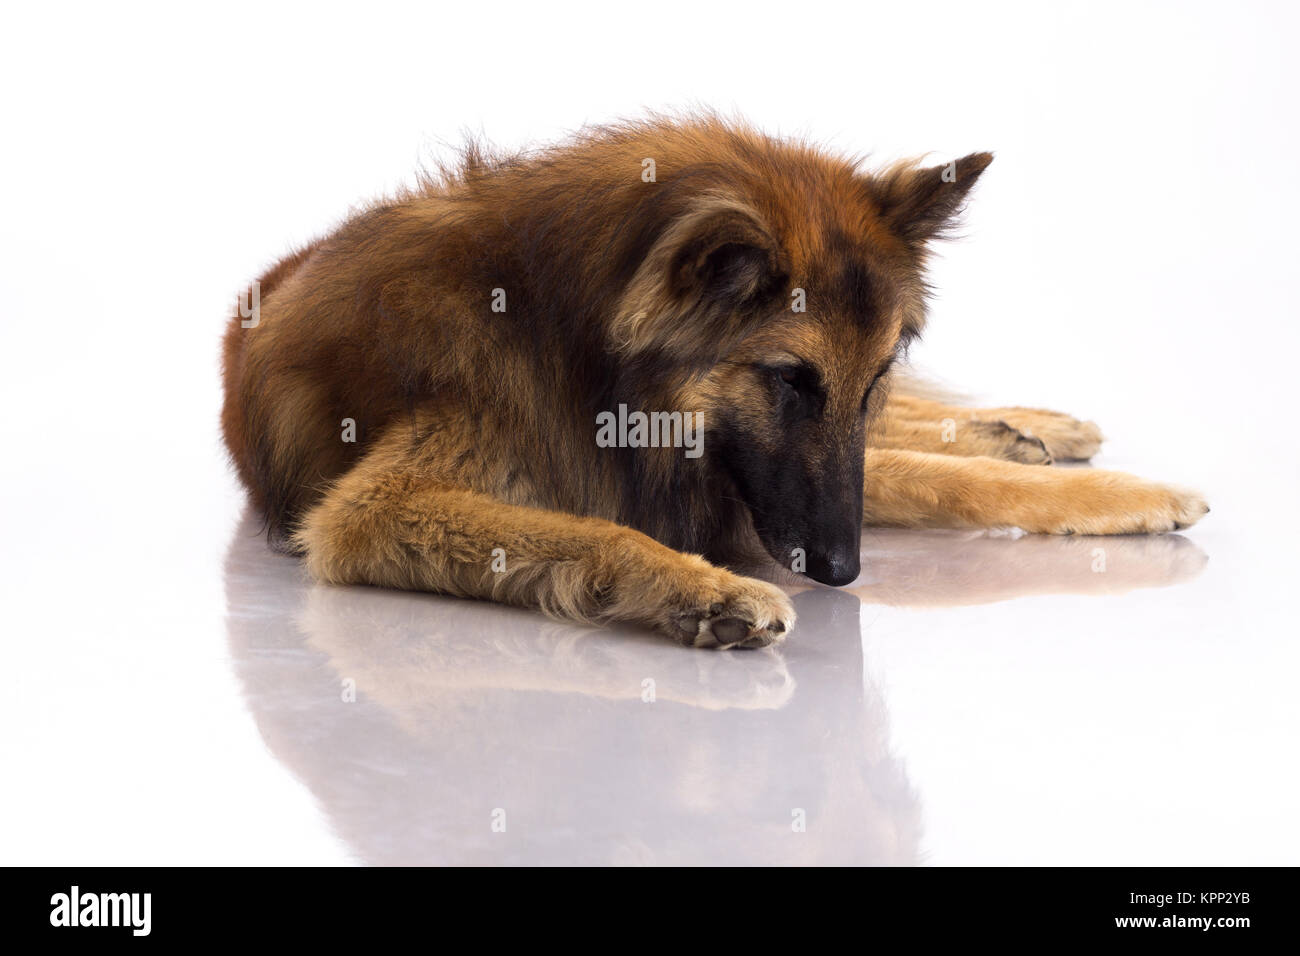 Belgian Shepherd Tervuren dog looking at himself in shiny floor, white studio background Stock Photo